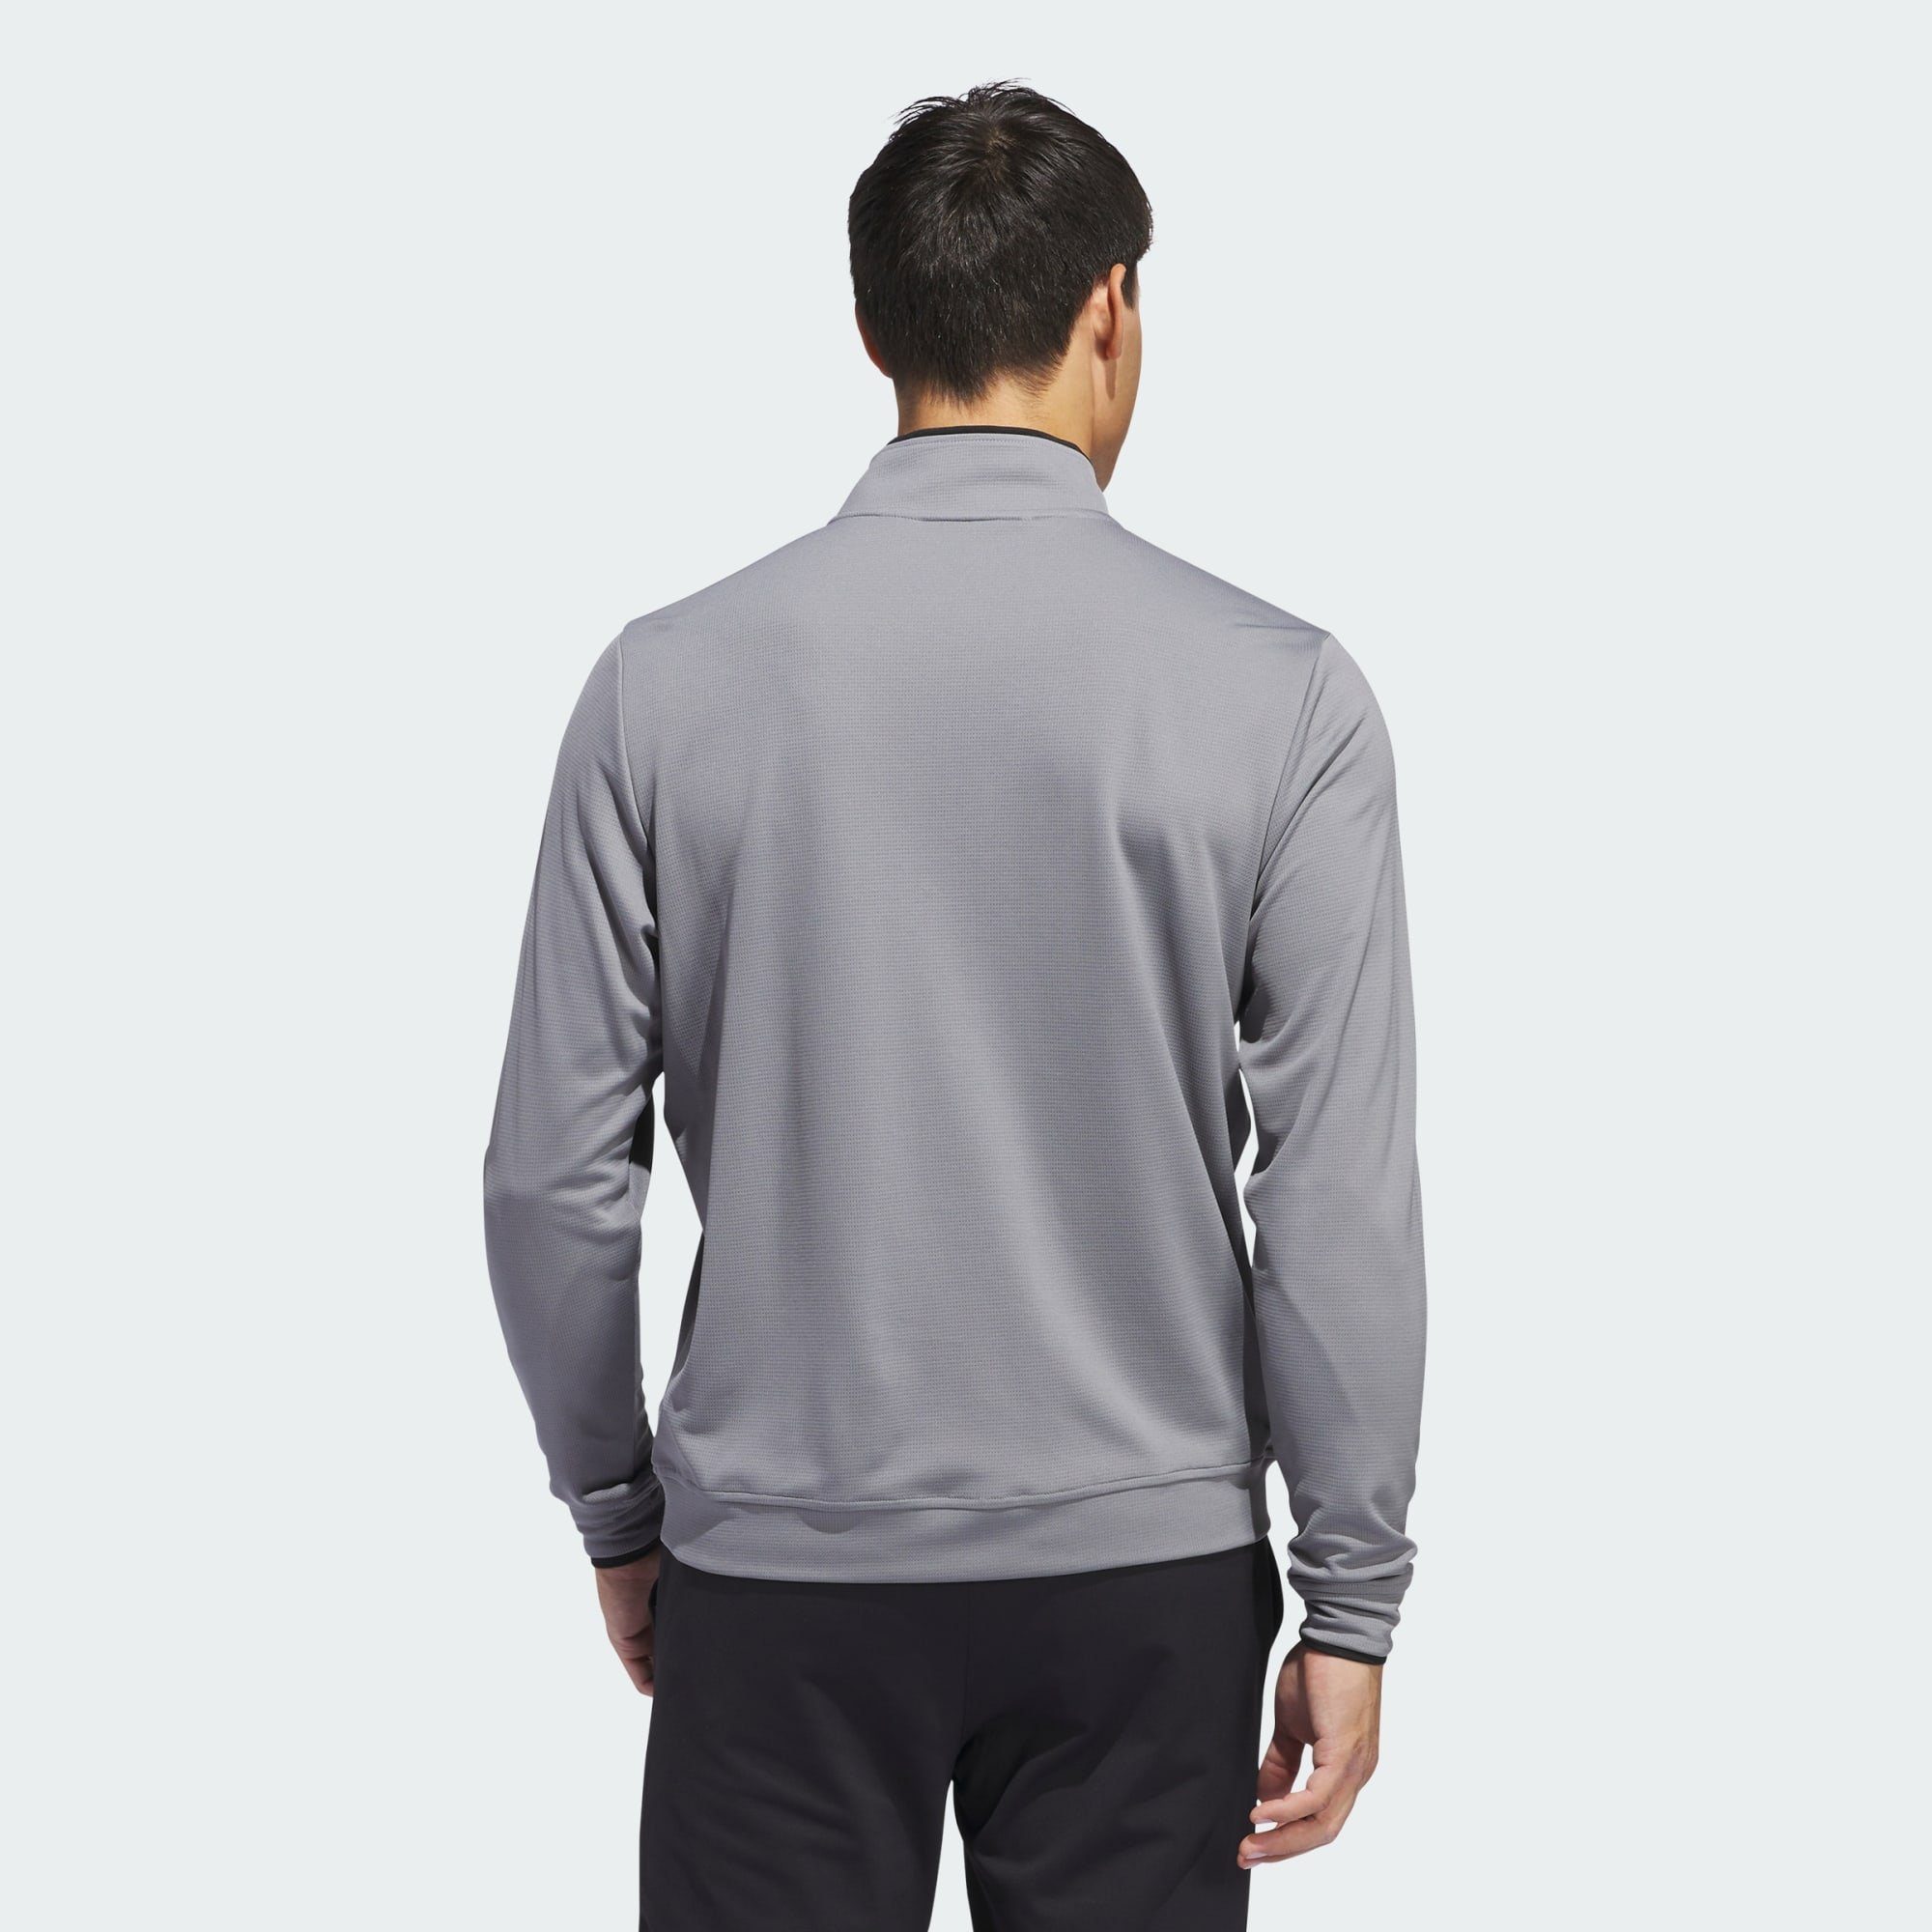 Funktionsshirt LIGHTWEIGHT adidas HALF-ZIP Three Performance OBERTEIL Grey